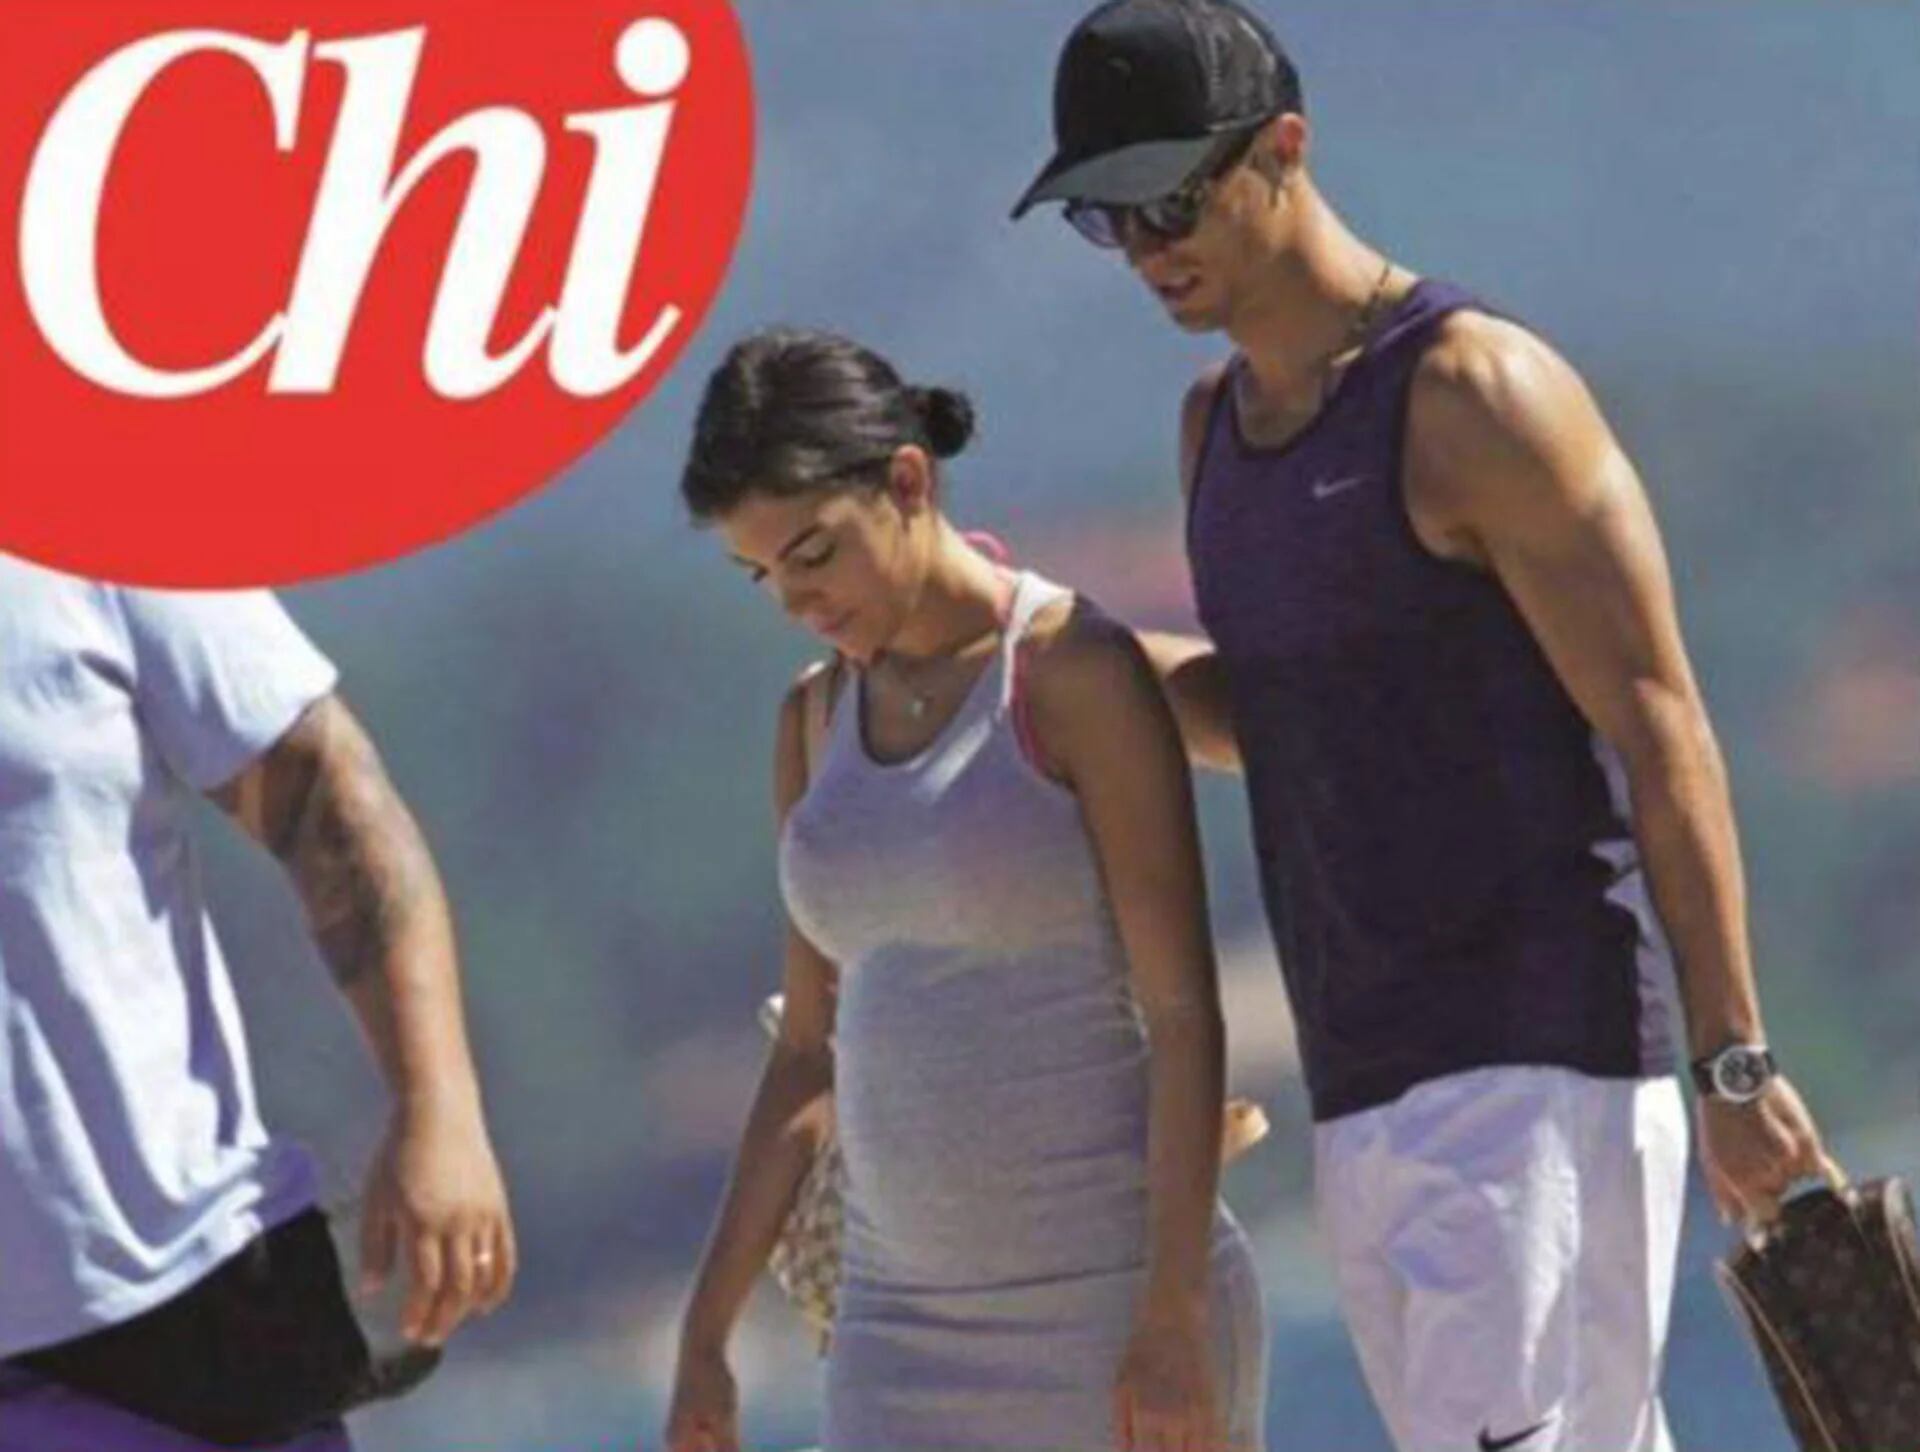 Imagen de Cristiano Ronaldo y su novia, que tiene el vientre hinchado como si estuviera embarazada